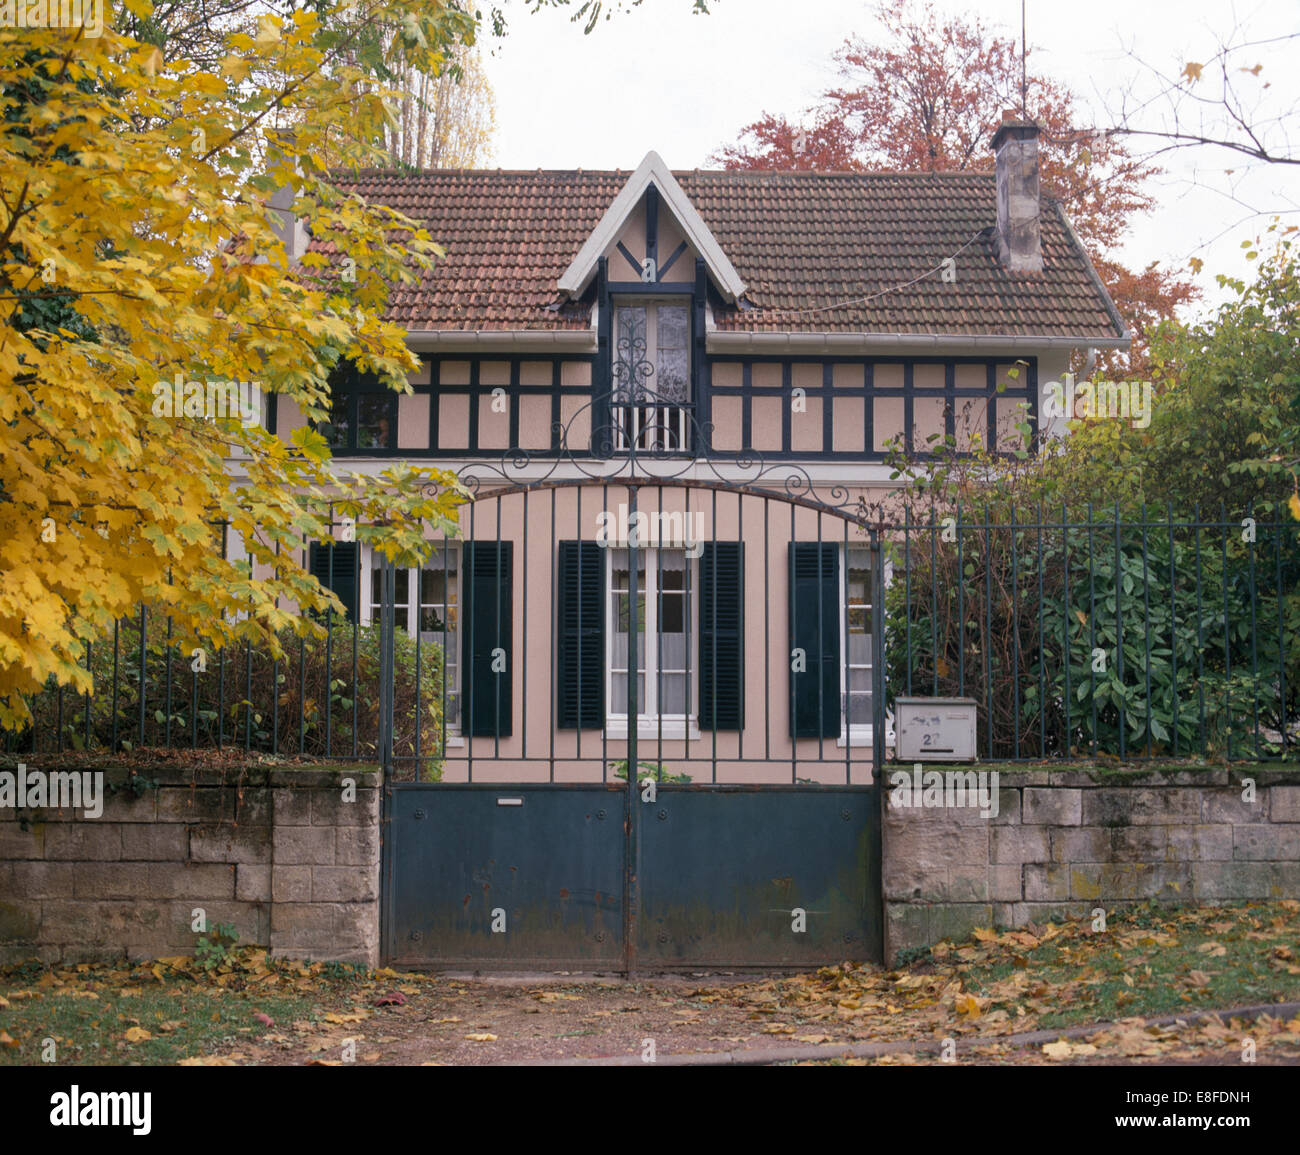 Ferro porte doppie nella parte anteriore del villaggio francese di casa con persiane nero su windows Foto Stock